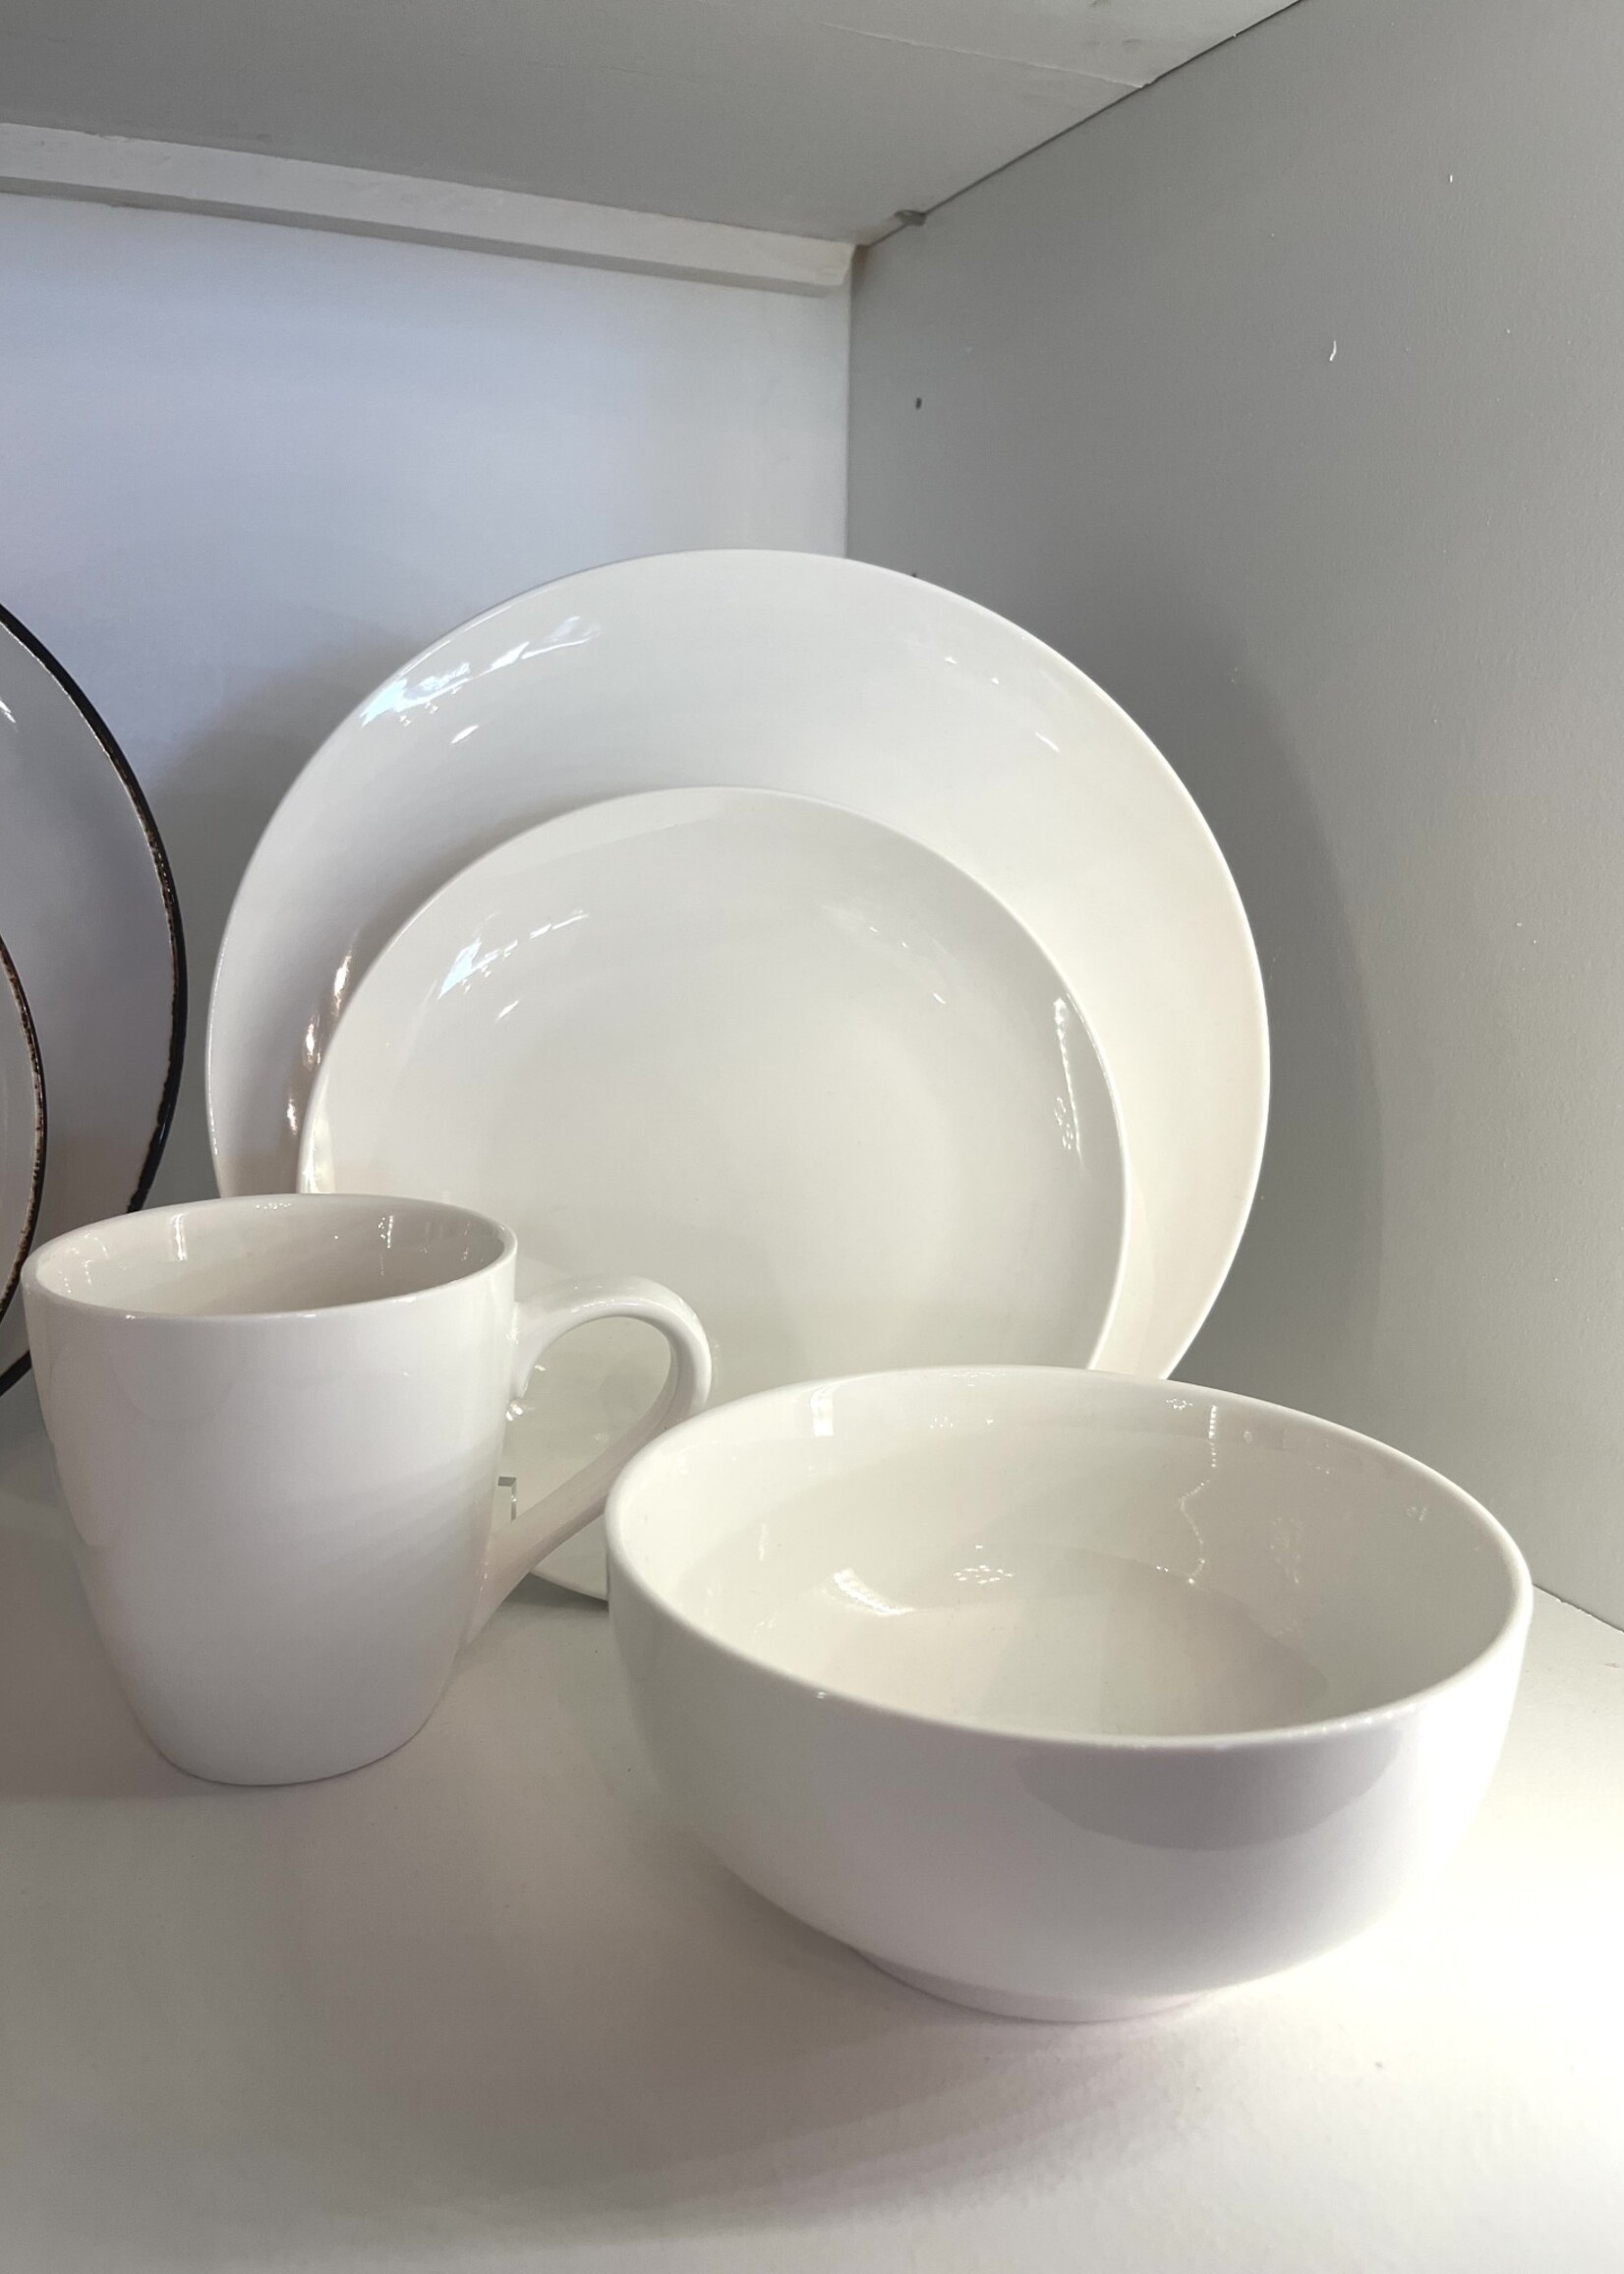 Home Essentials 6"H Pescara White Porcelain Cereal Bowl